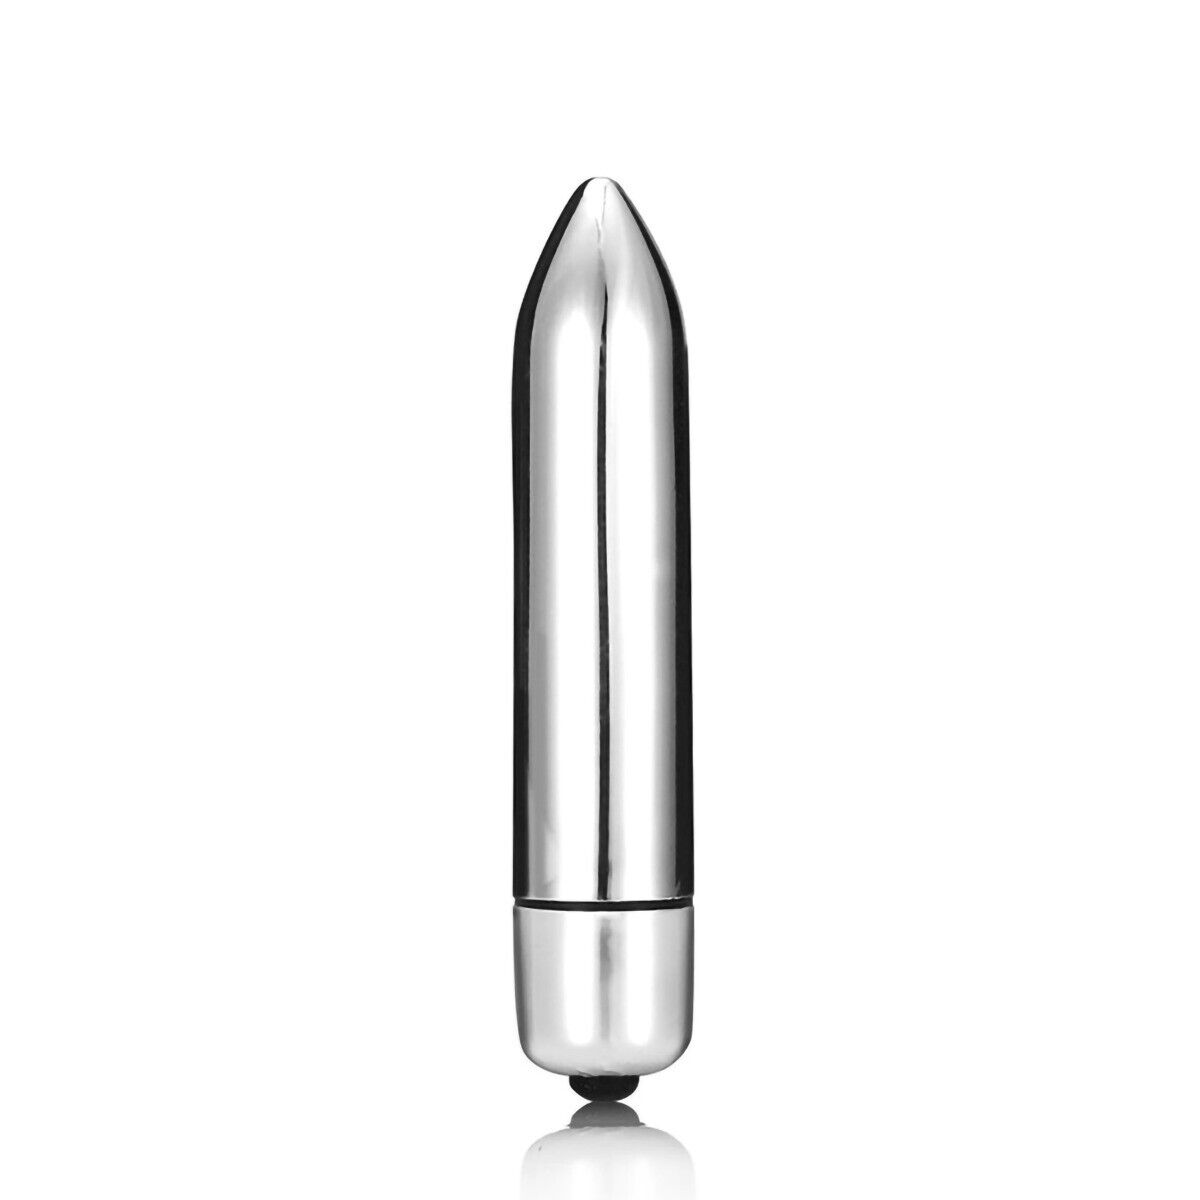 7 Multi-speed Mini Silver Vibrating Bullet Vibrator Beginner Sex Toys for Women